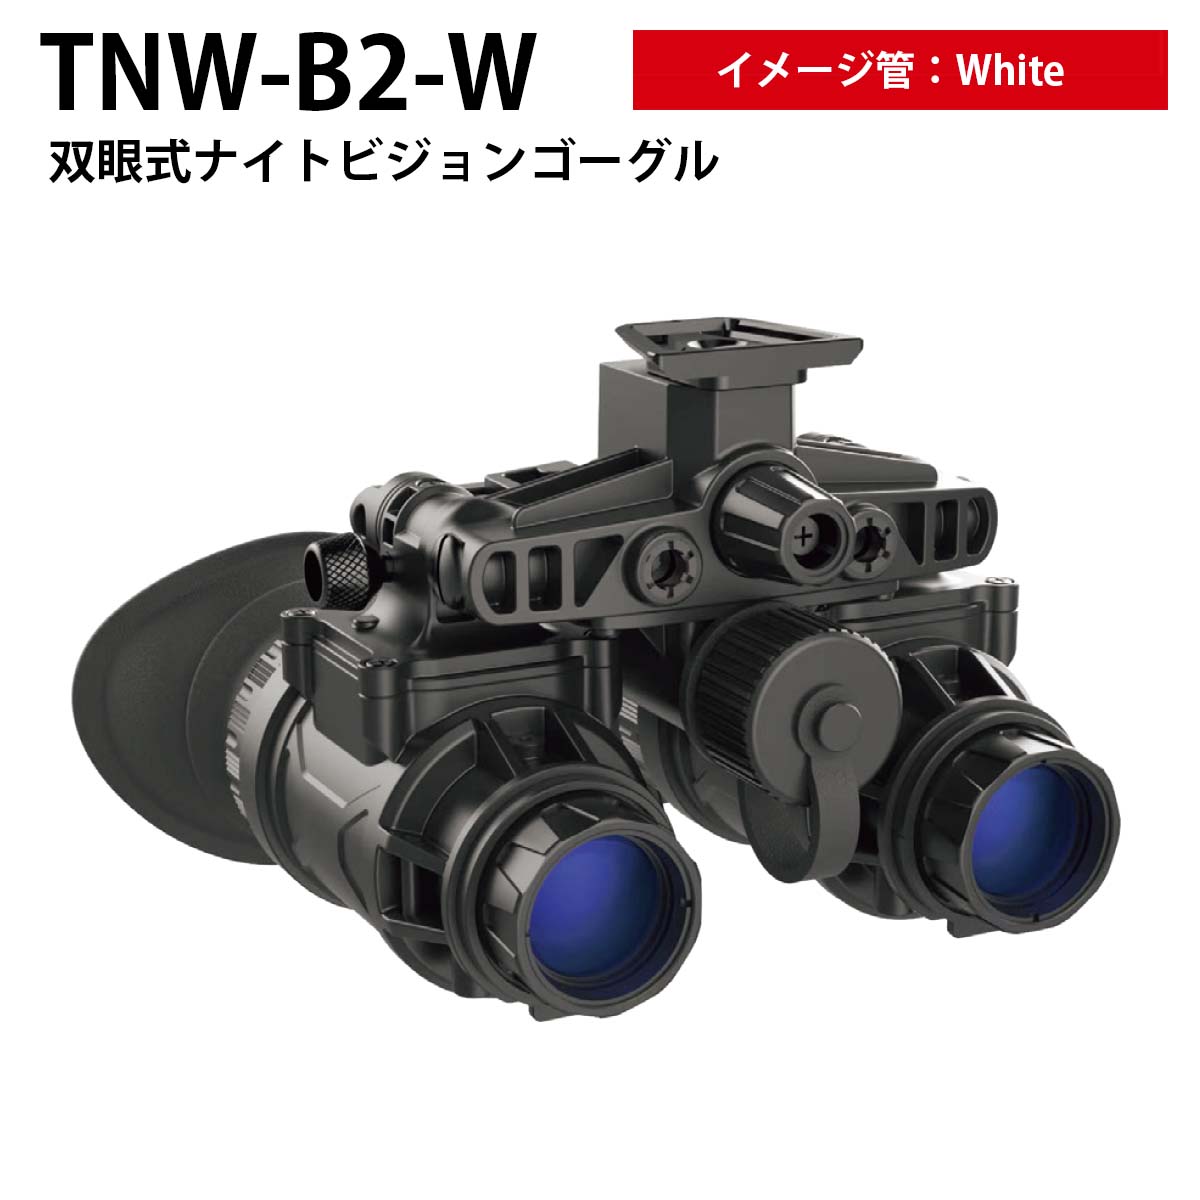 TNW-B2-W